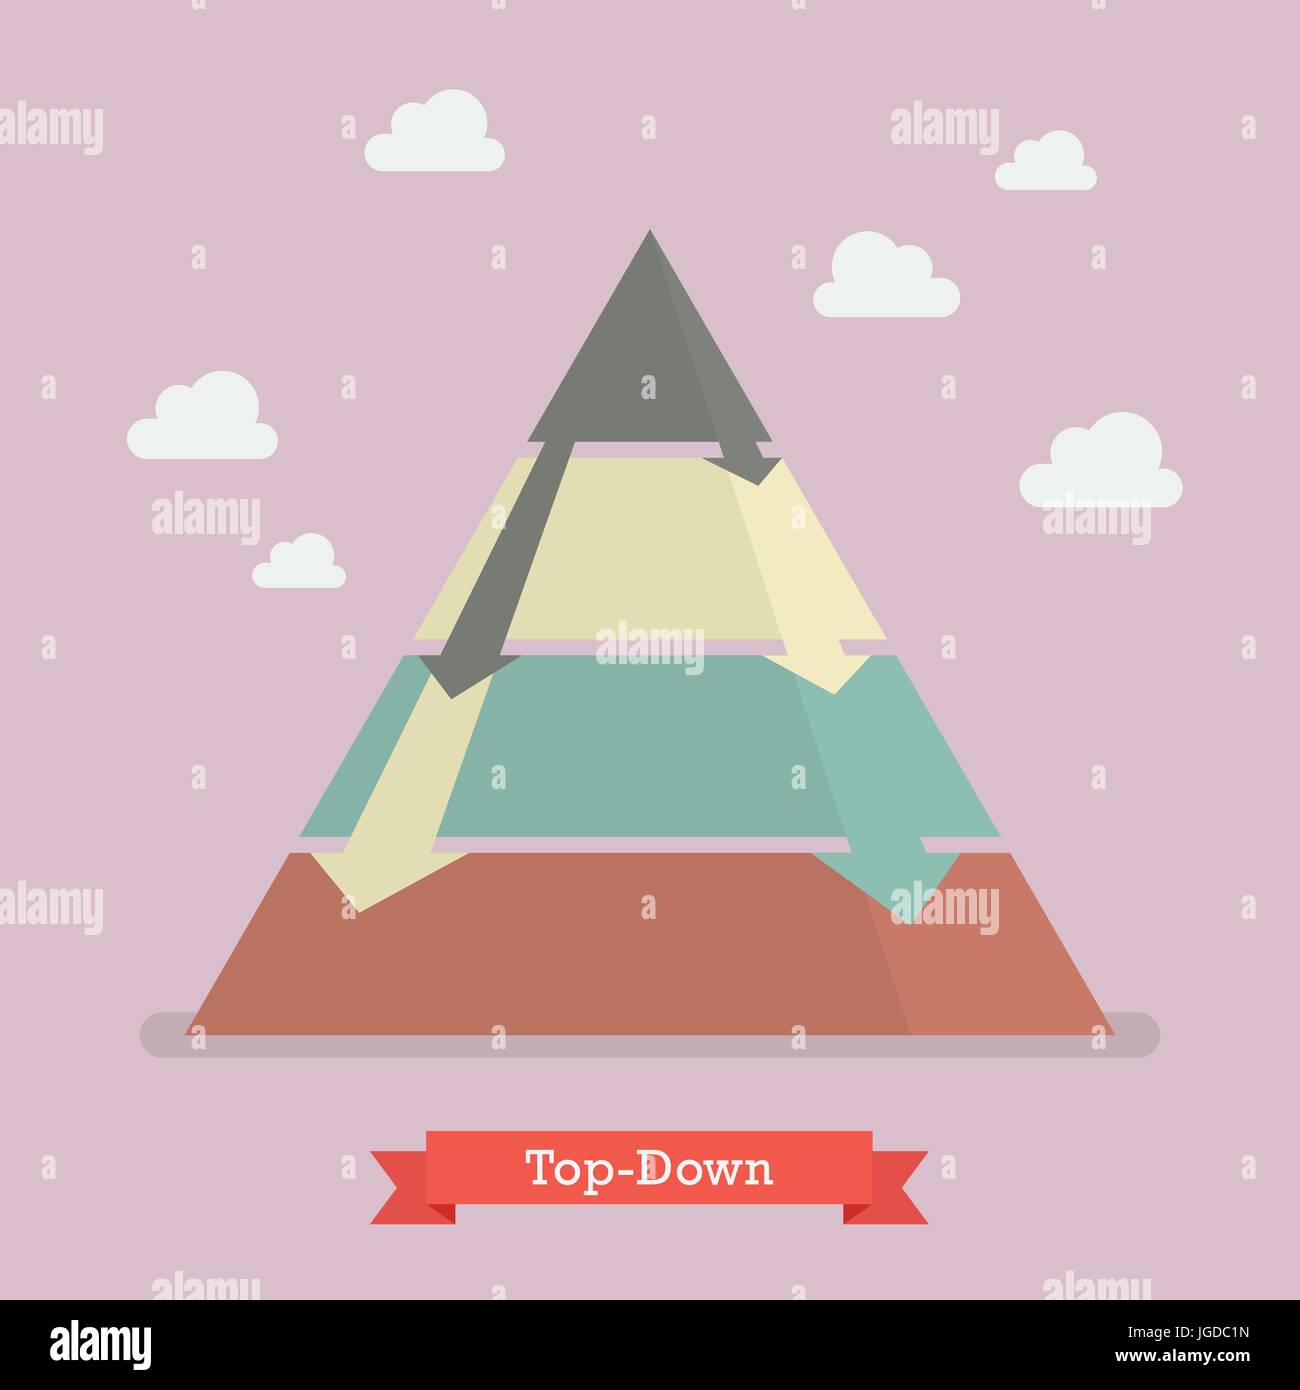 Top-Down-Pyramide-Business-Strategie. Vektor-illustration Stock Vektor